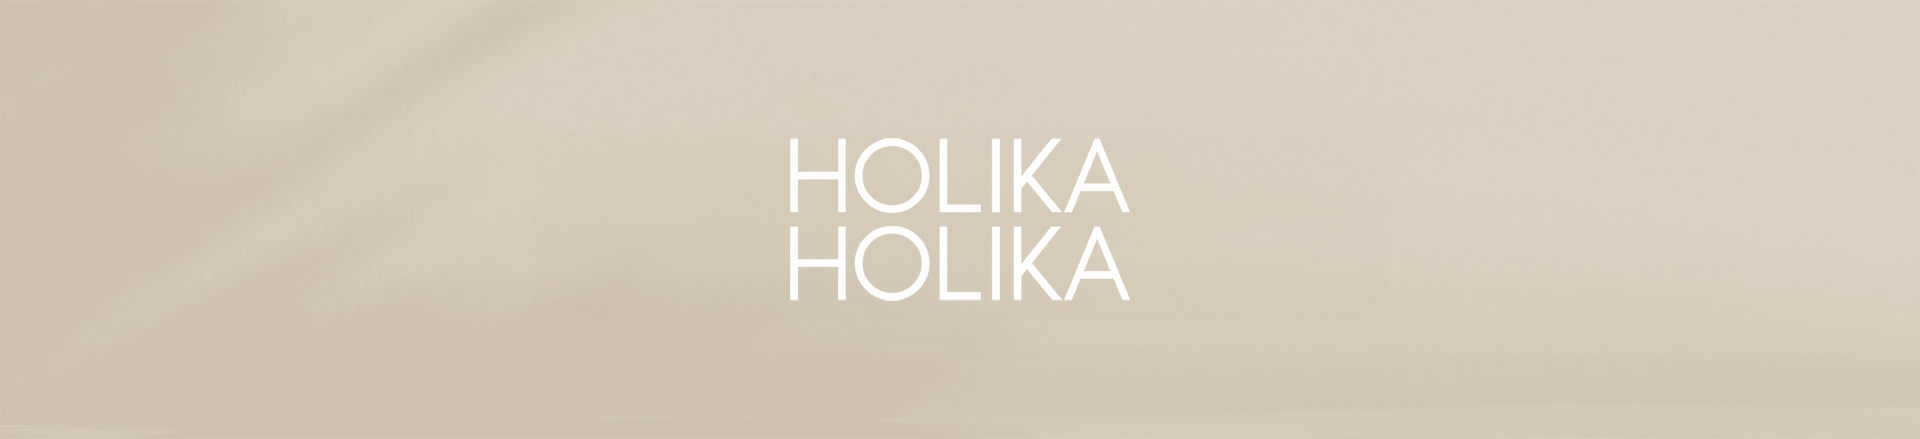 Banner HOLIKA HOLIKA